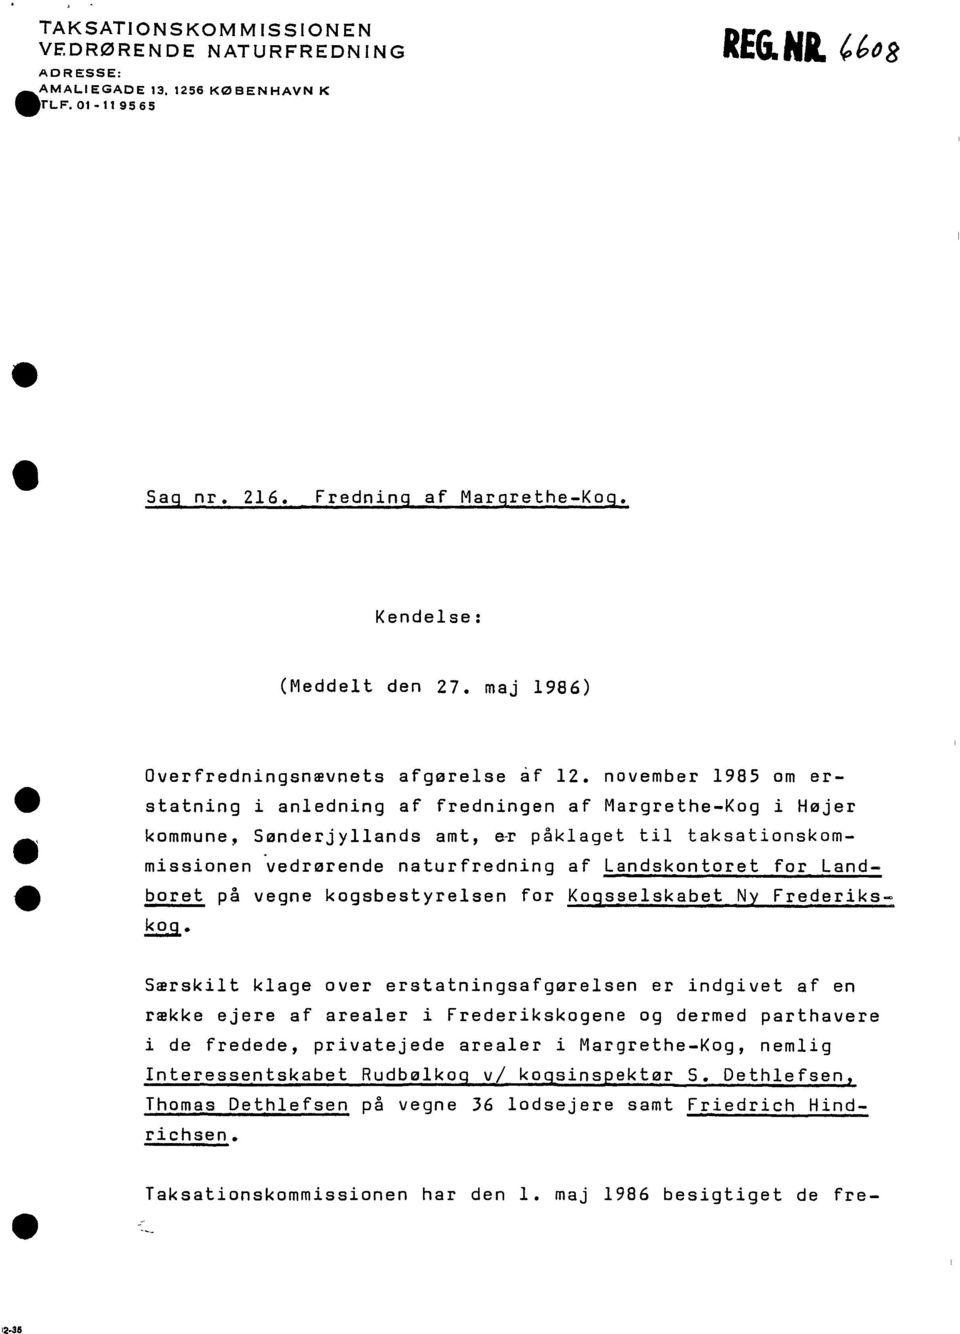 november 1985 om erstatning i anledning af fredningen af Margrethe-Kog i Højer kommune, Sønderjyllands amt, e~ påklaget til taksationskommissionen vedrørende naturfredning af landskontoret for